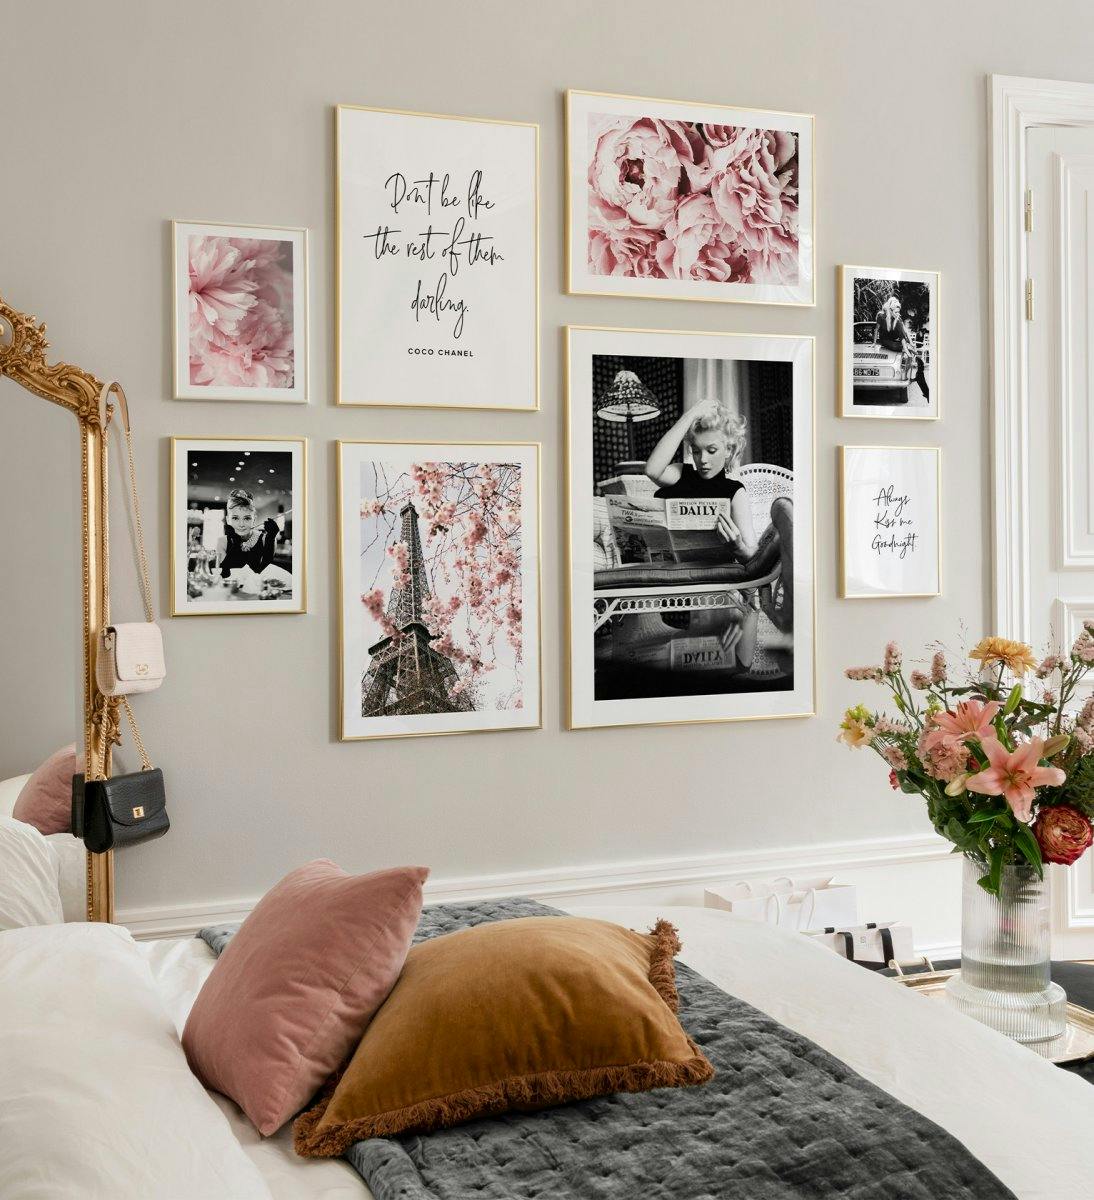 جدار معرض عصري مع ملصقات زهرة وردية ومطبوعات اقتباس وملصقات المشاهير مع إطارات ذهبية لغرفة المعيشة